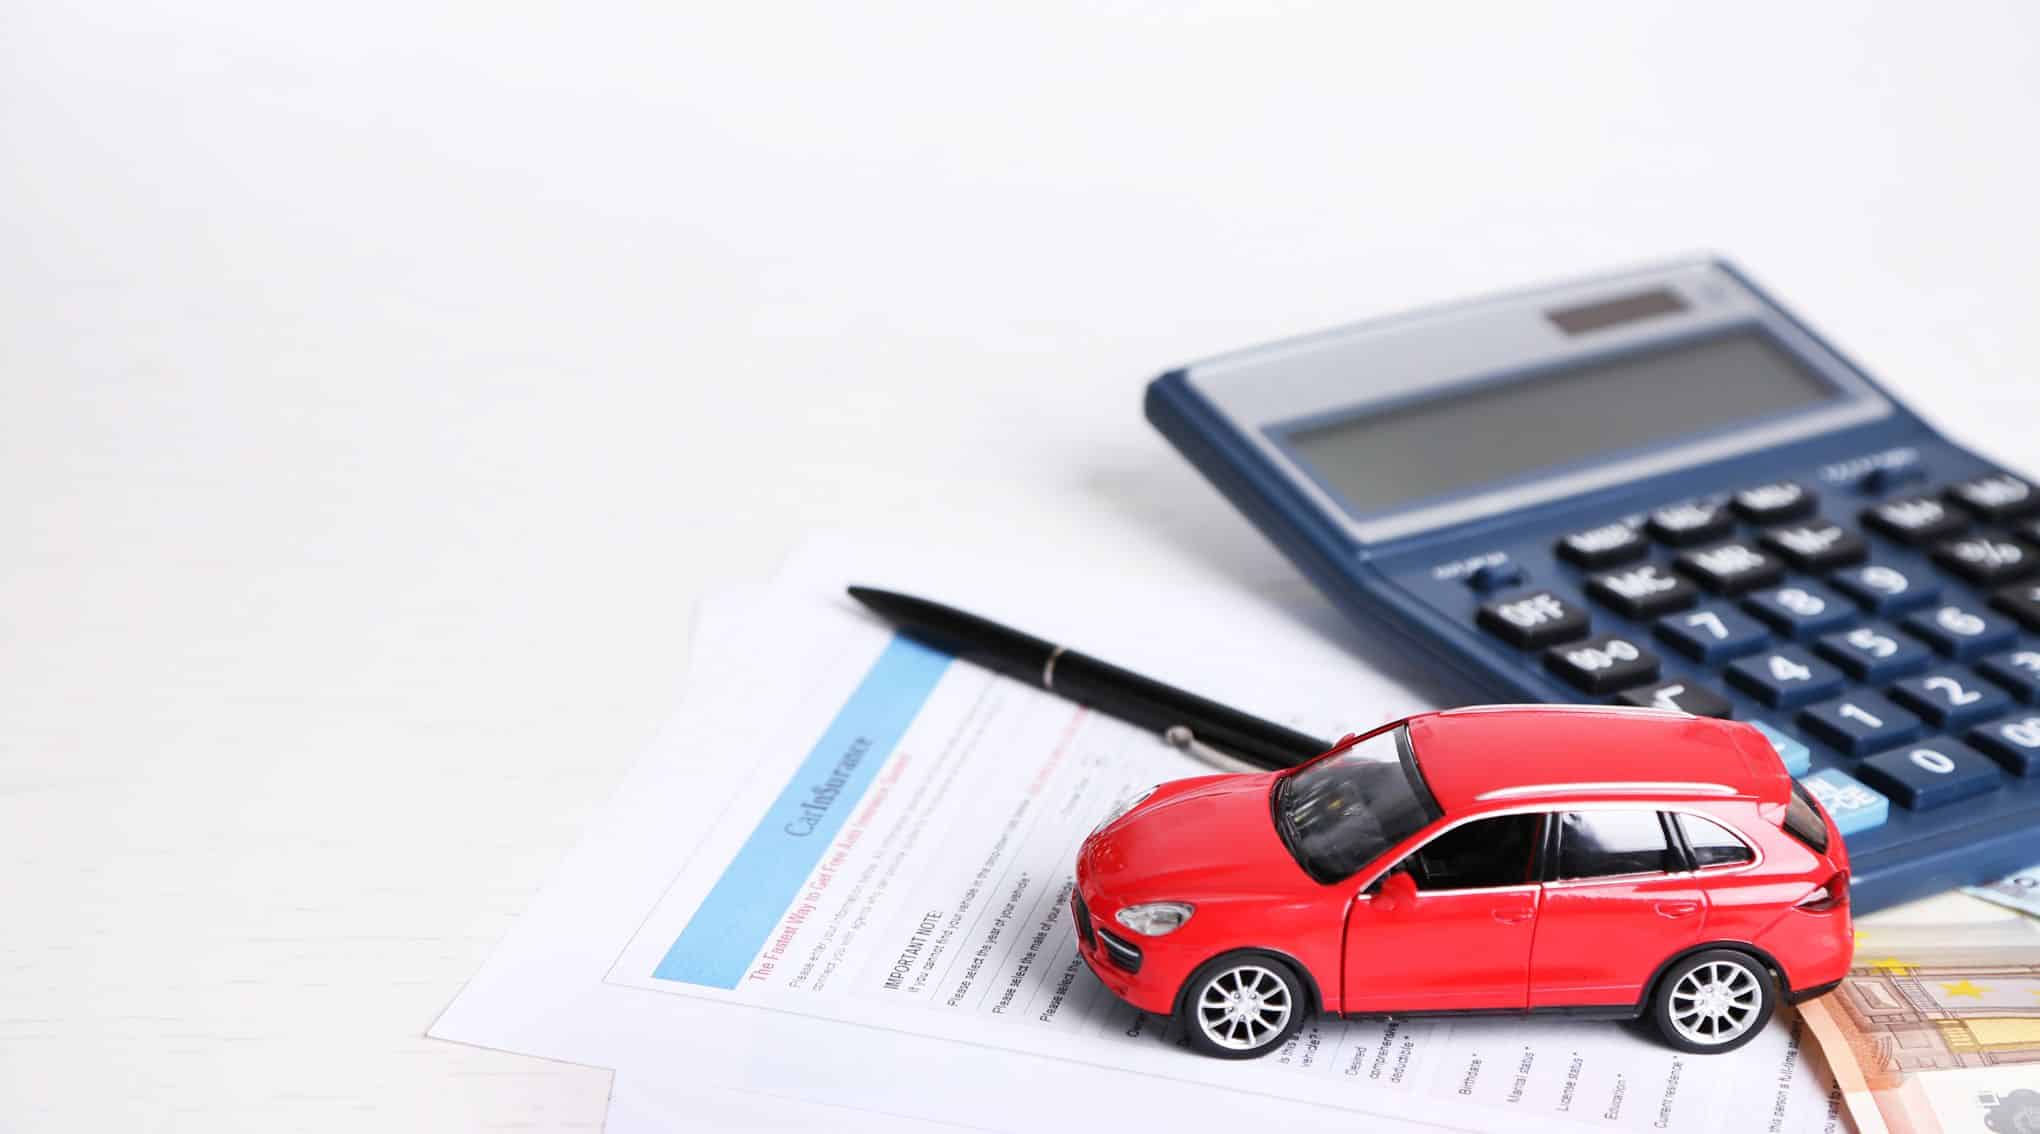 Comment réduire le coût de son assurance auto ?